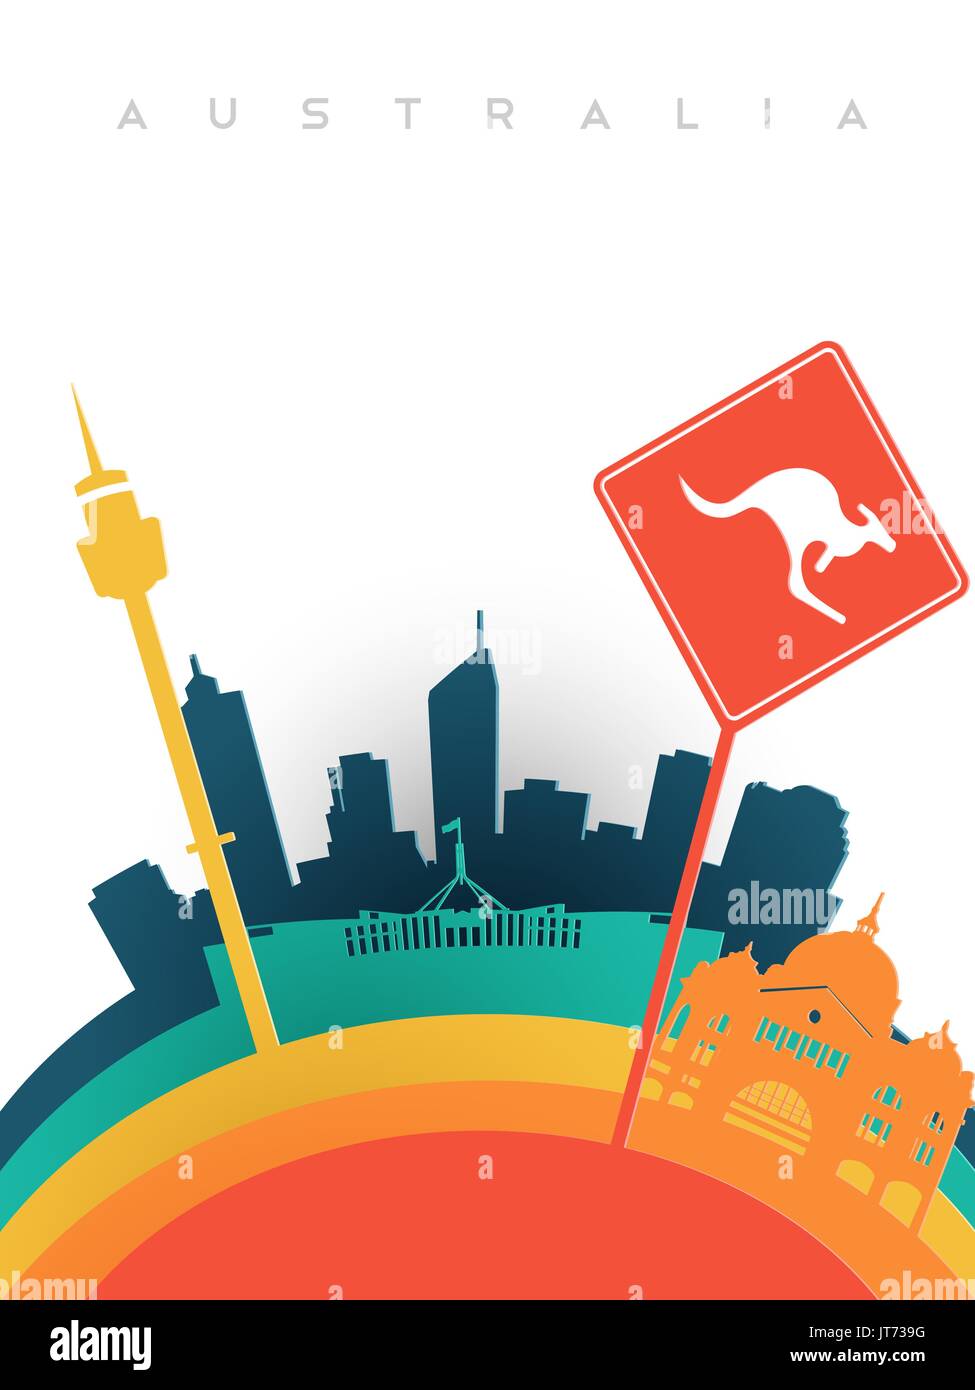 Reisen Sie Australien Darstellung in 3d Papier schneiden Stil, australische Sehenswürdigkeiten. Sydney Tower, Känguru Schild, Melbourne Bahnhof umfasst. EPS1 Stock Vektor